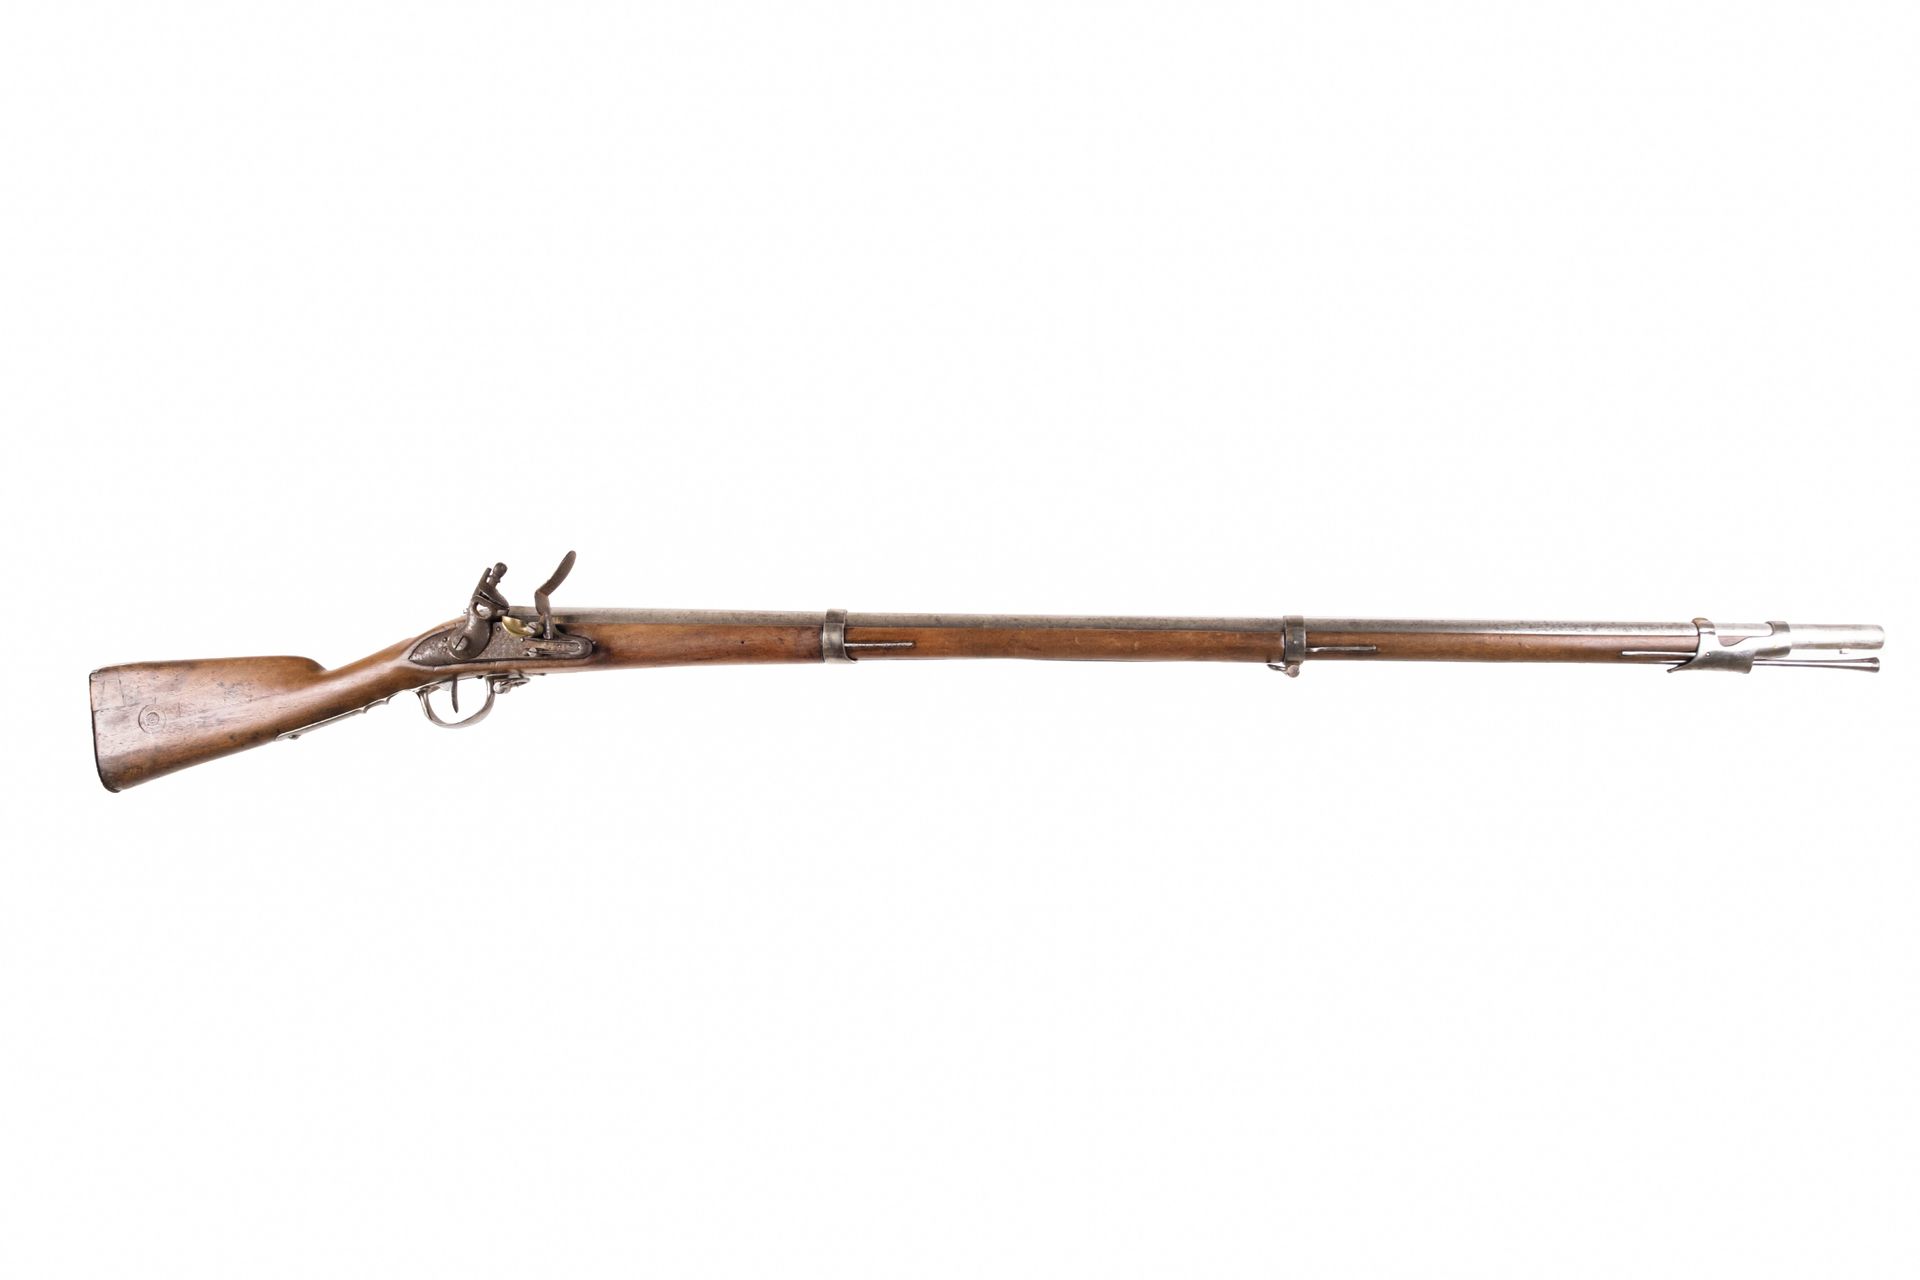 Null Fusil de pedernal Grenadier modelo 1777-An IX. 

Cañón redondo con rayo, fe&hellip;